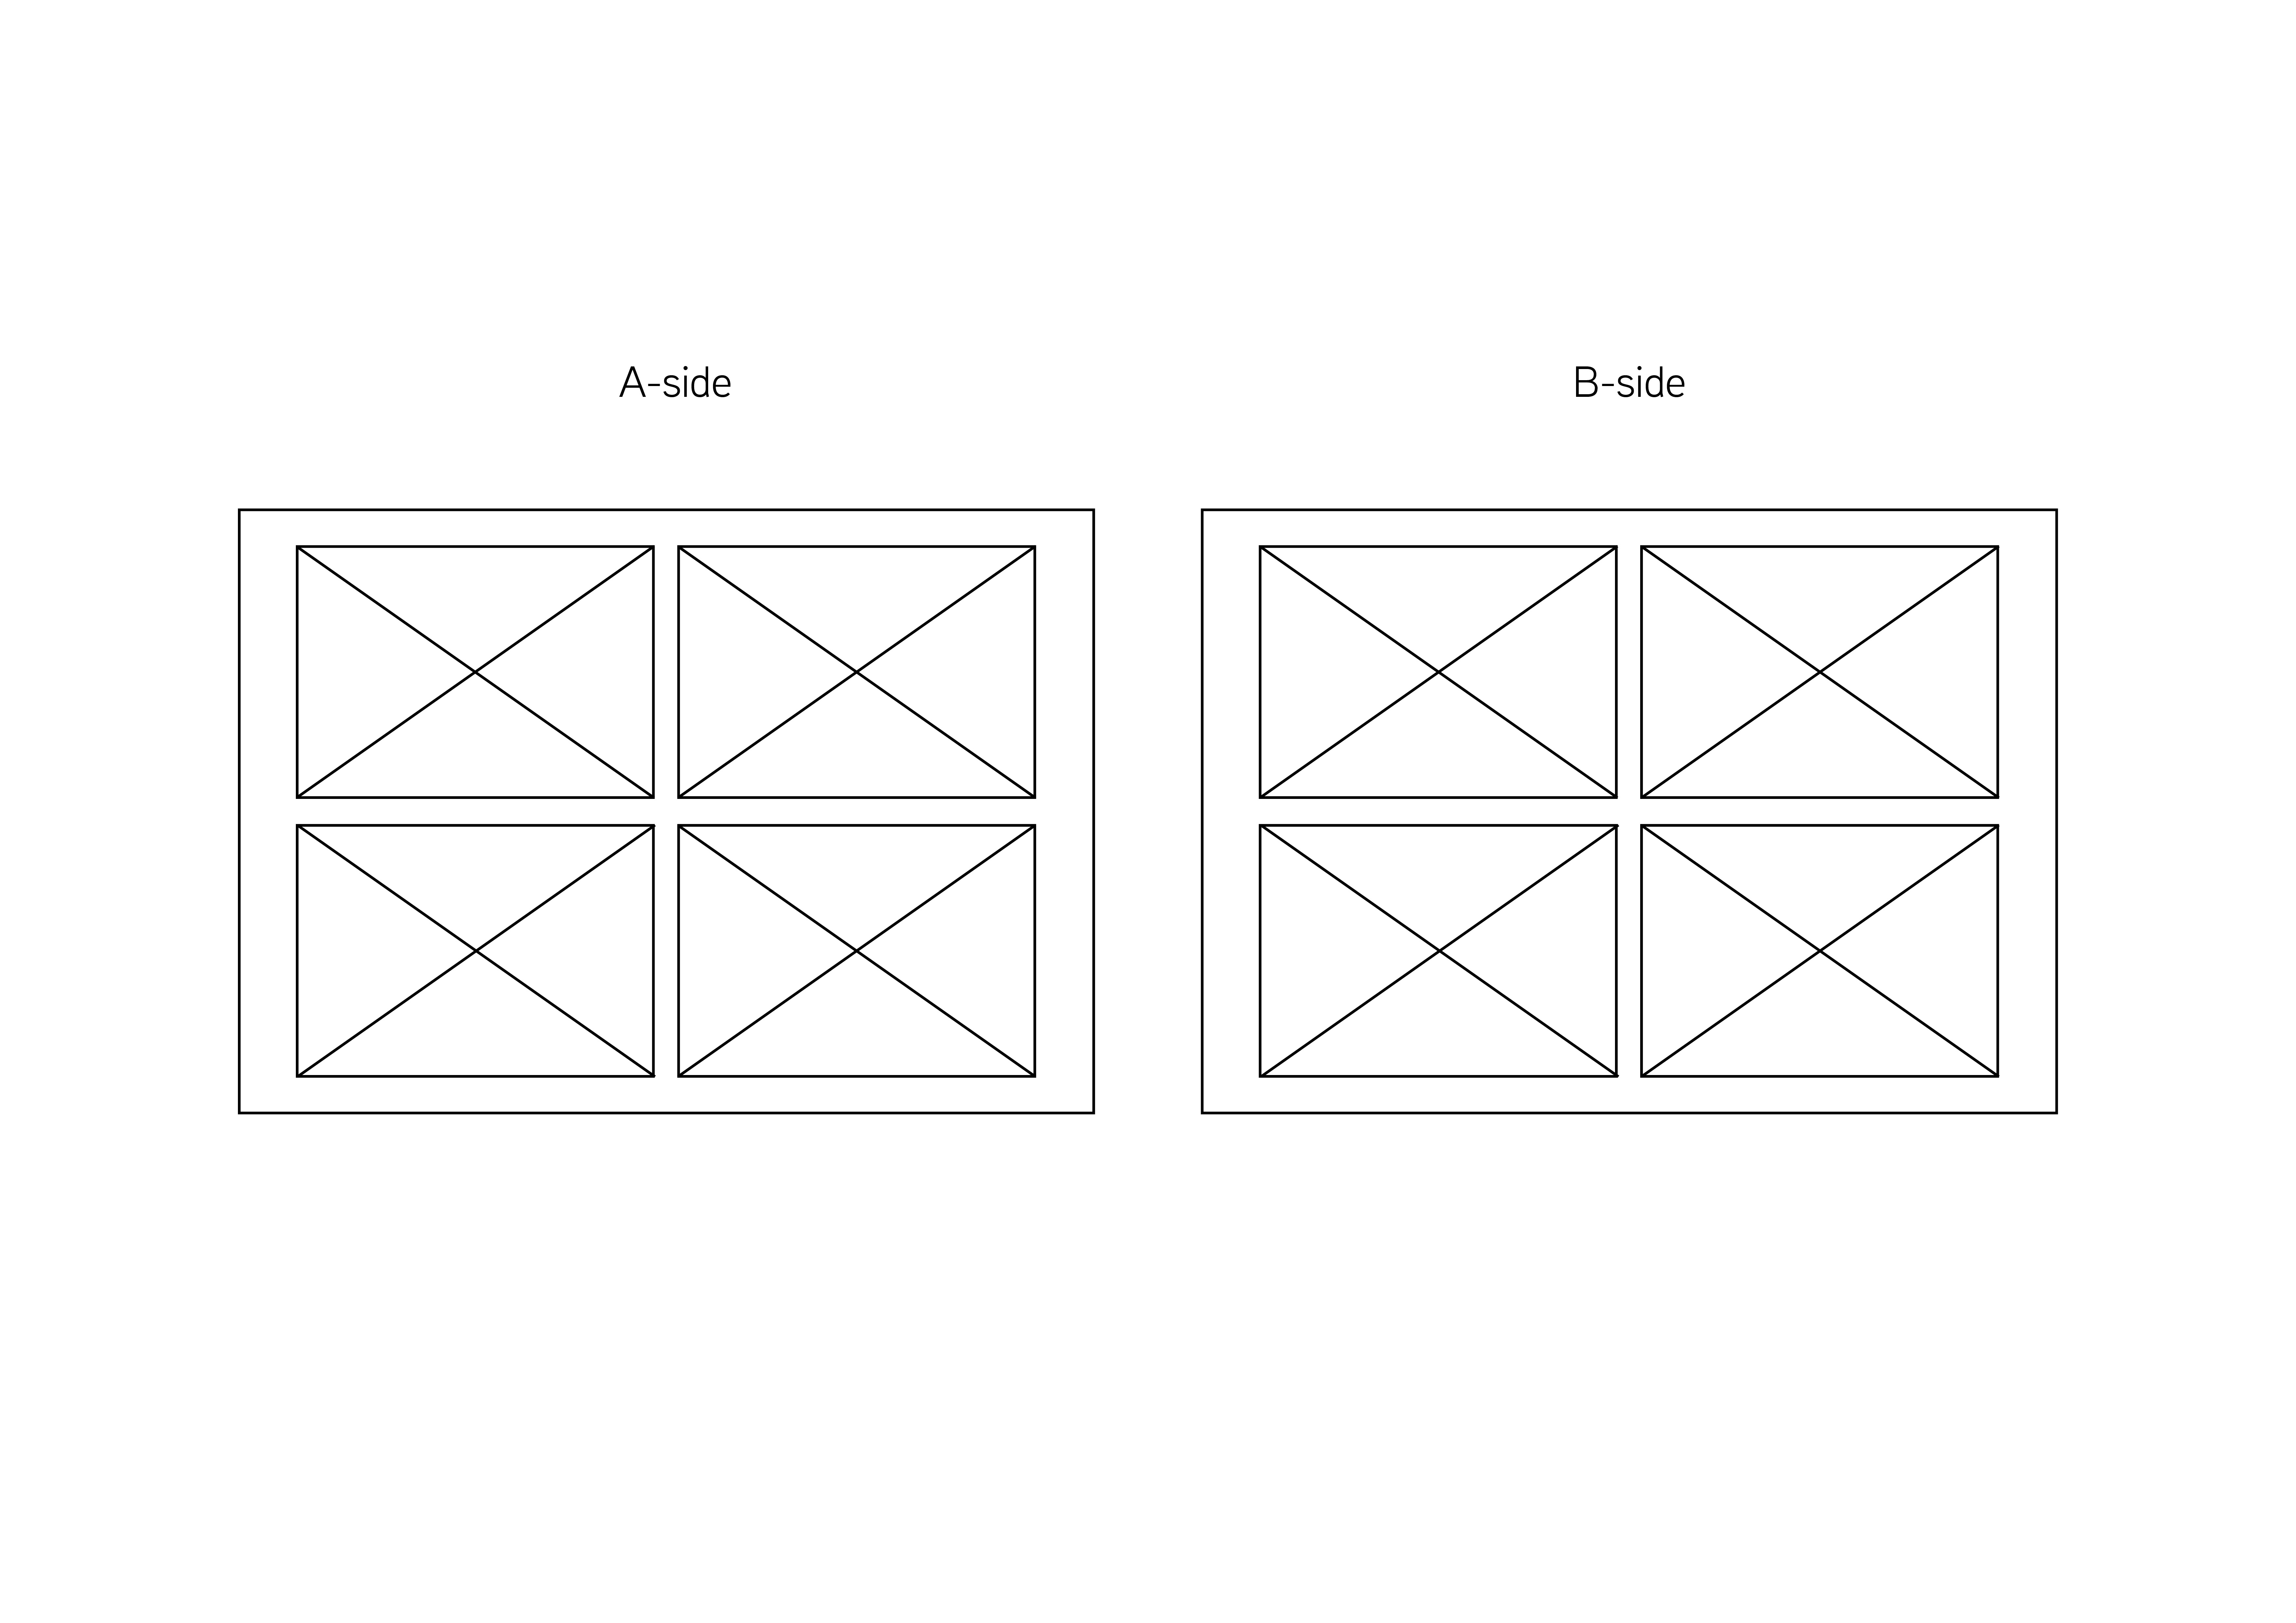 Multiple design example 6.jpg